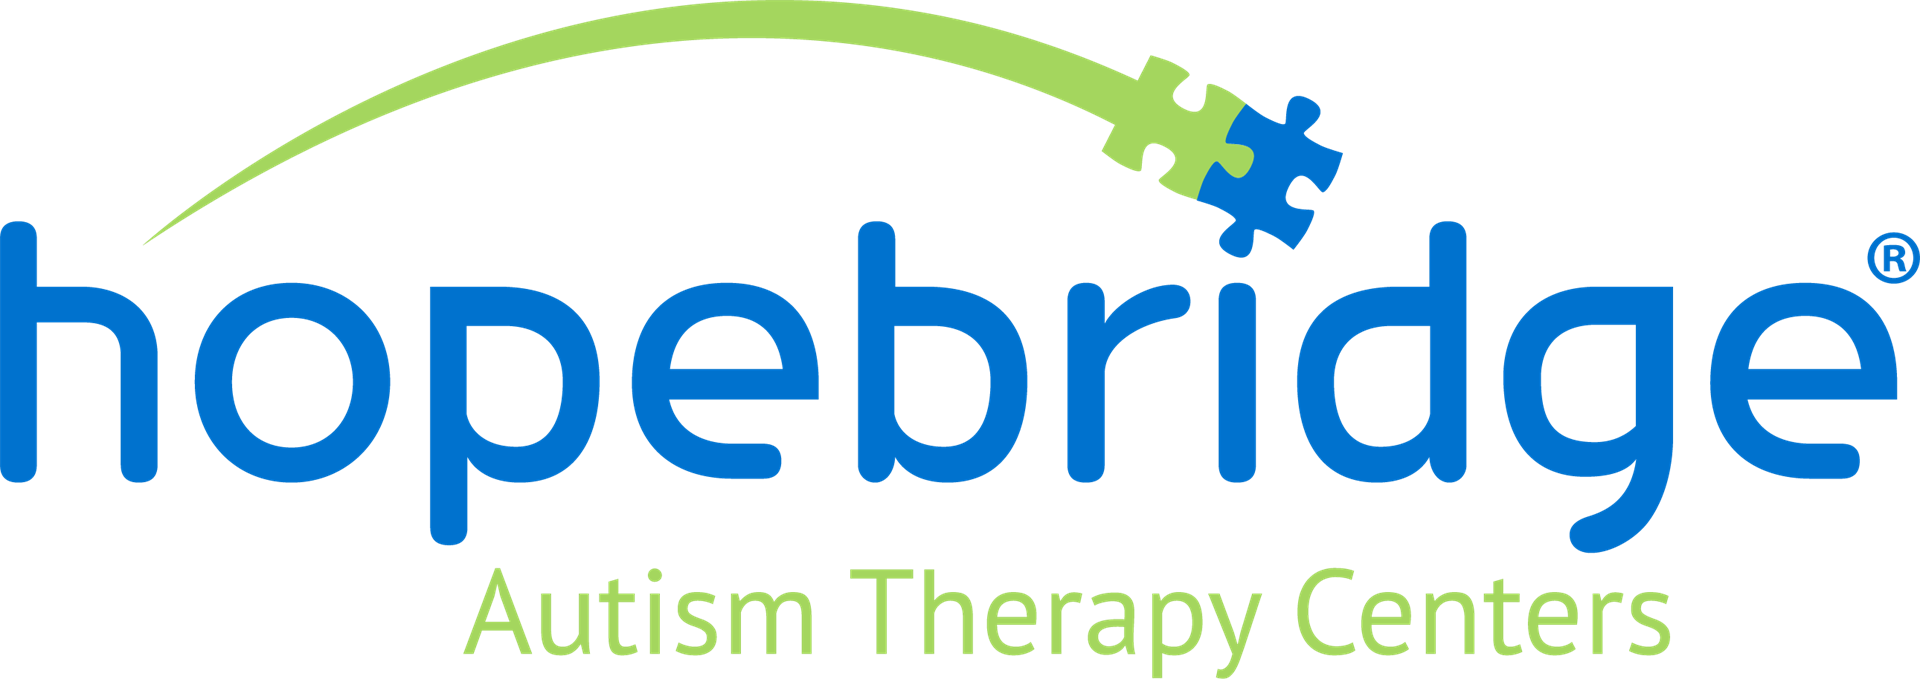 Hopebridge Autism Therapy Centers logo